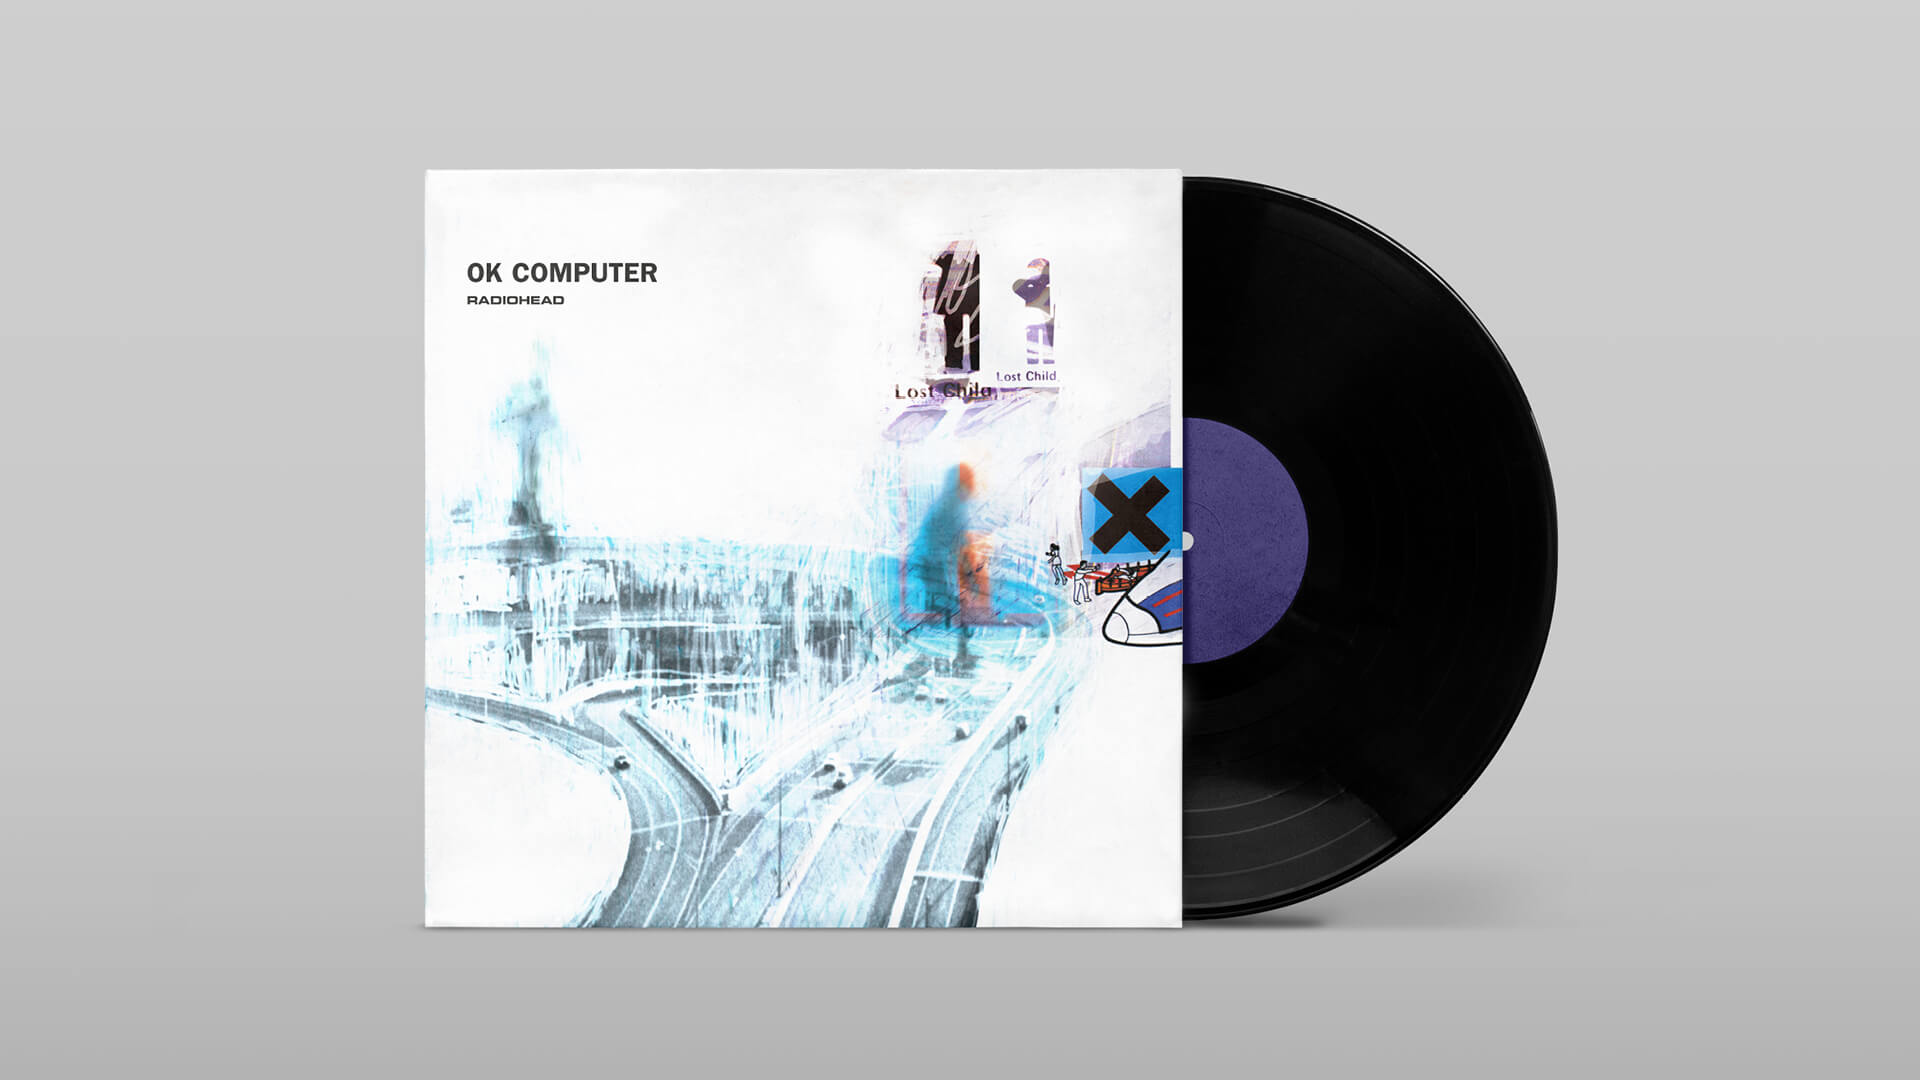 Mockup des Albums „OK Computer“ von Radiohead